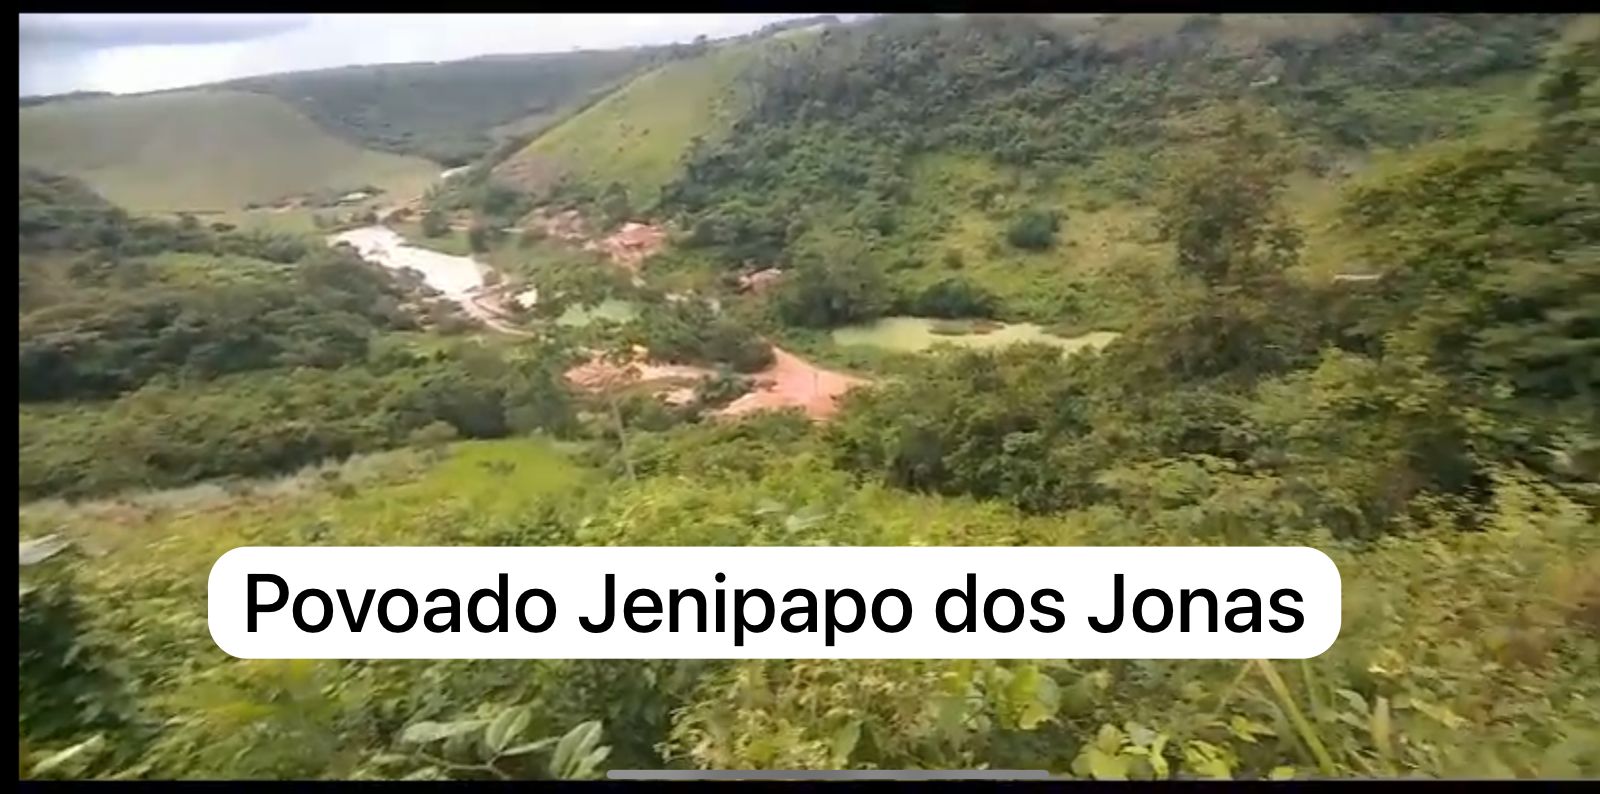 Em Jenipapo dos Vieiras, seis vereadores votam contra compra de terreno para moradores em situação de risco